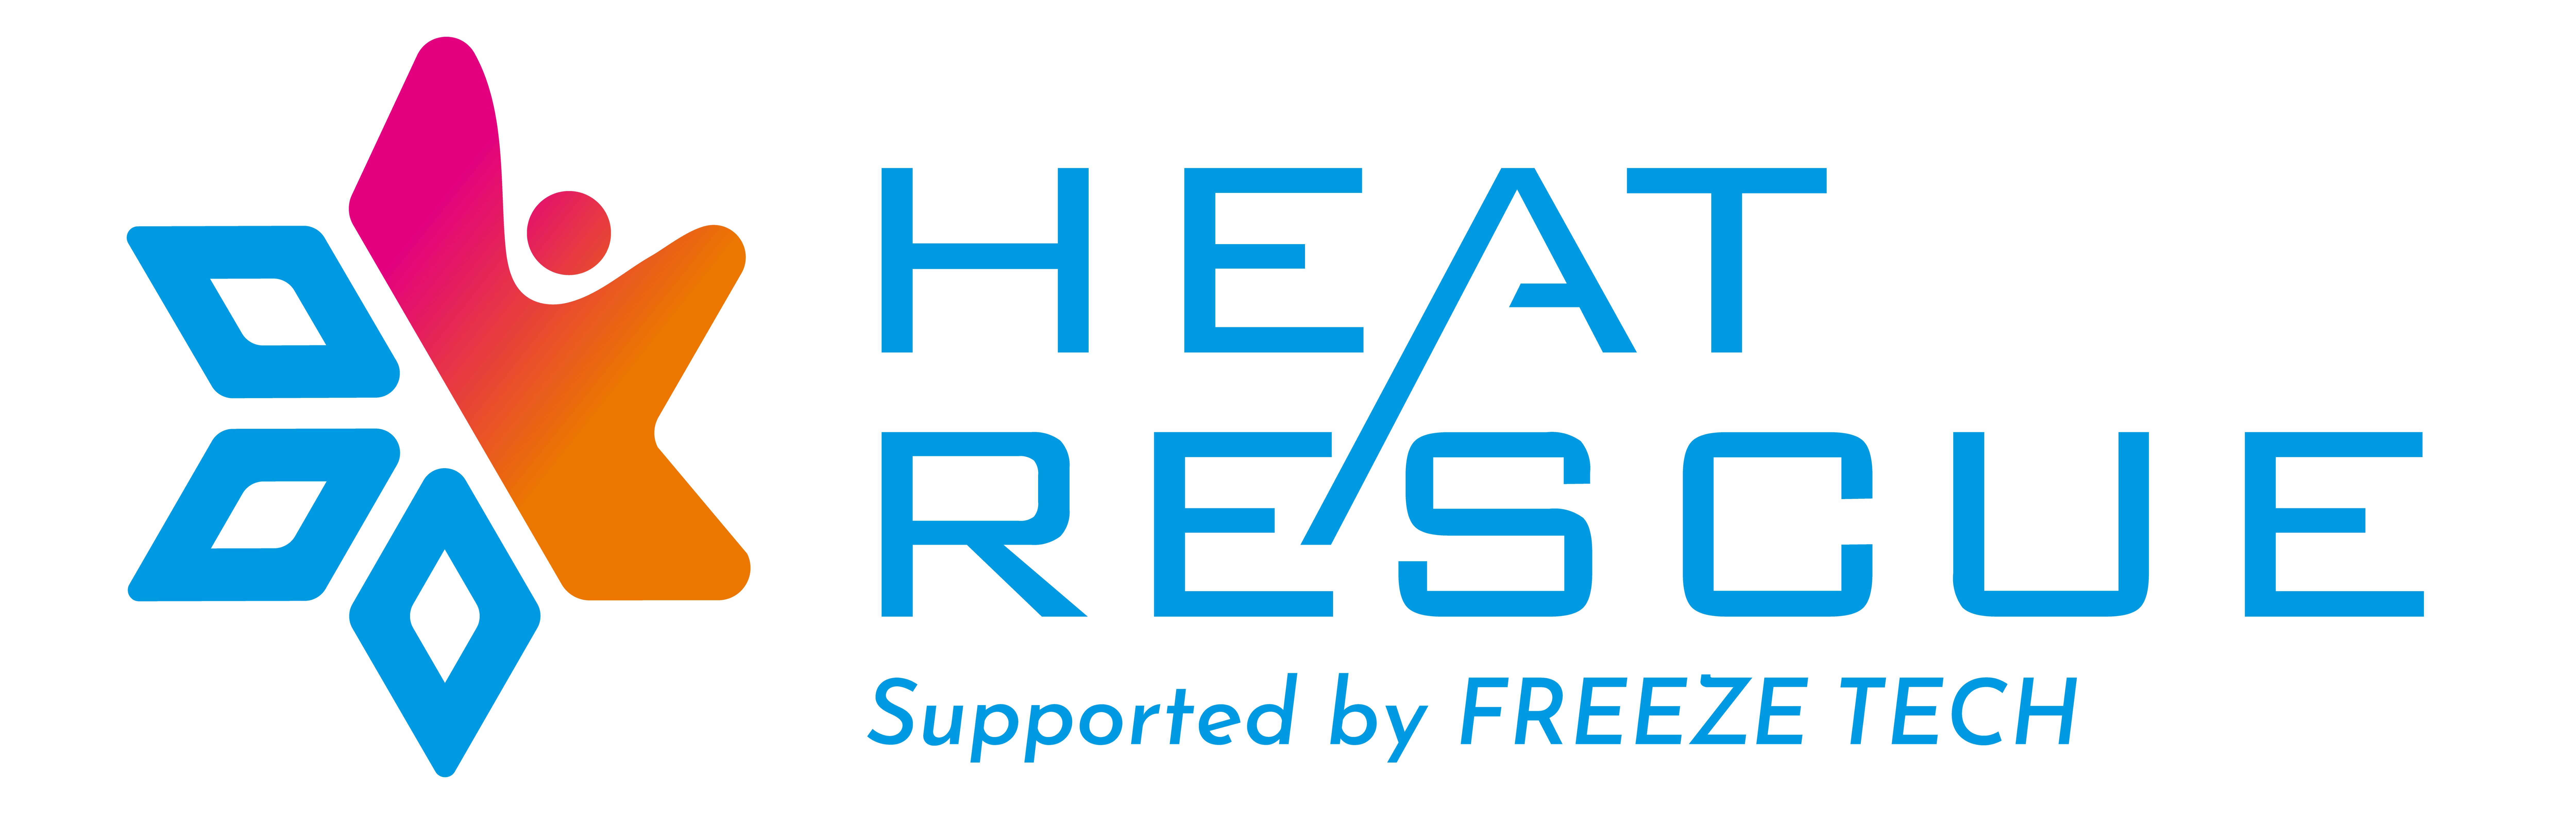 HEAT RESCUE logo